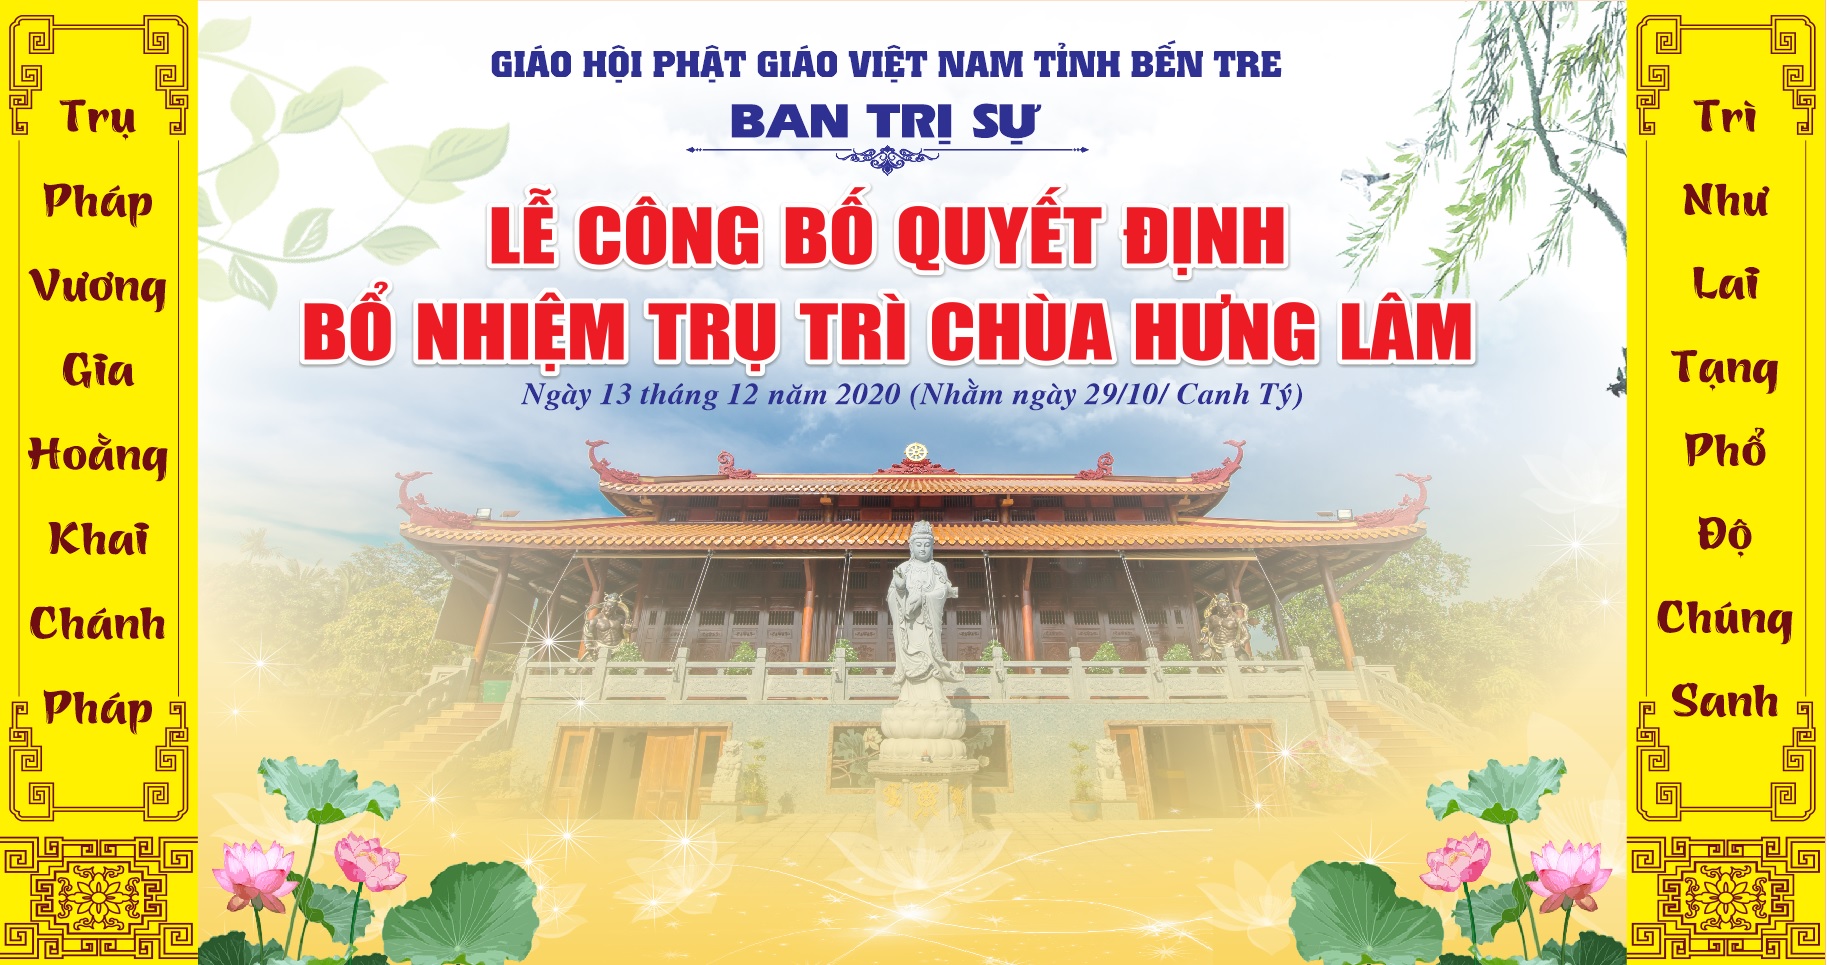 Sắp tới Bổ nhiệm ĐĐ.Thích Minh Duyên trụ trì chùa Hưng Lâm